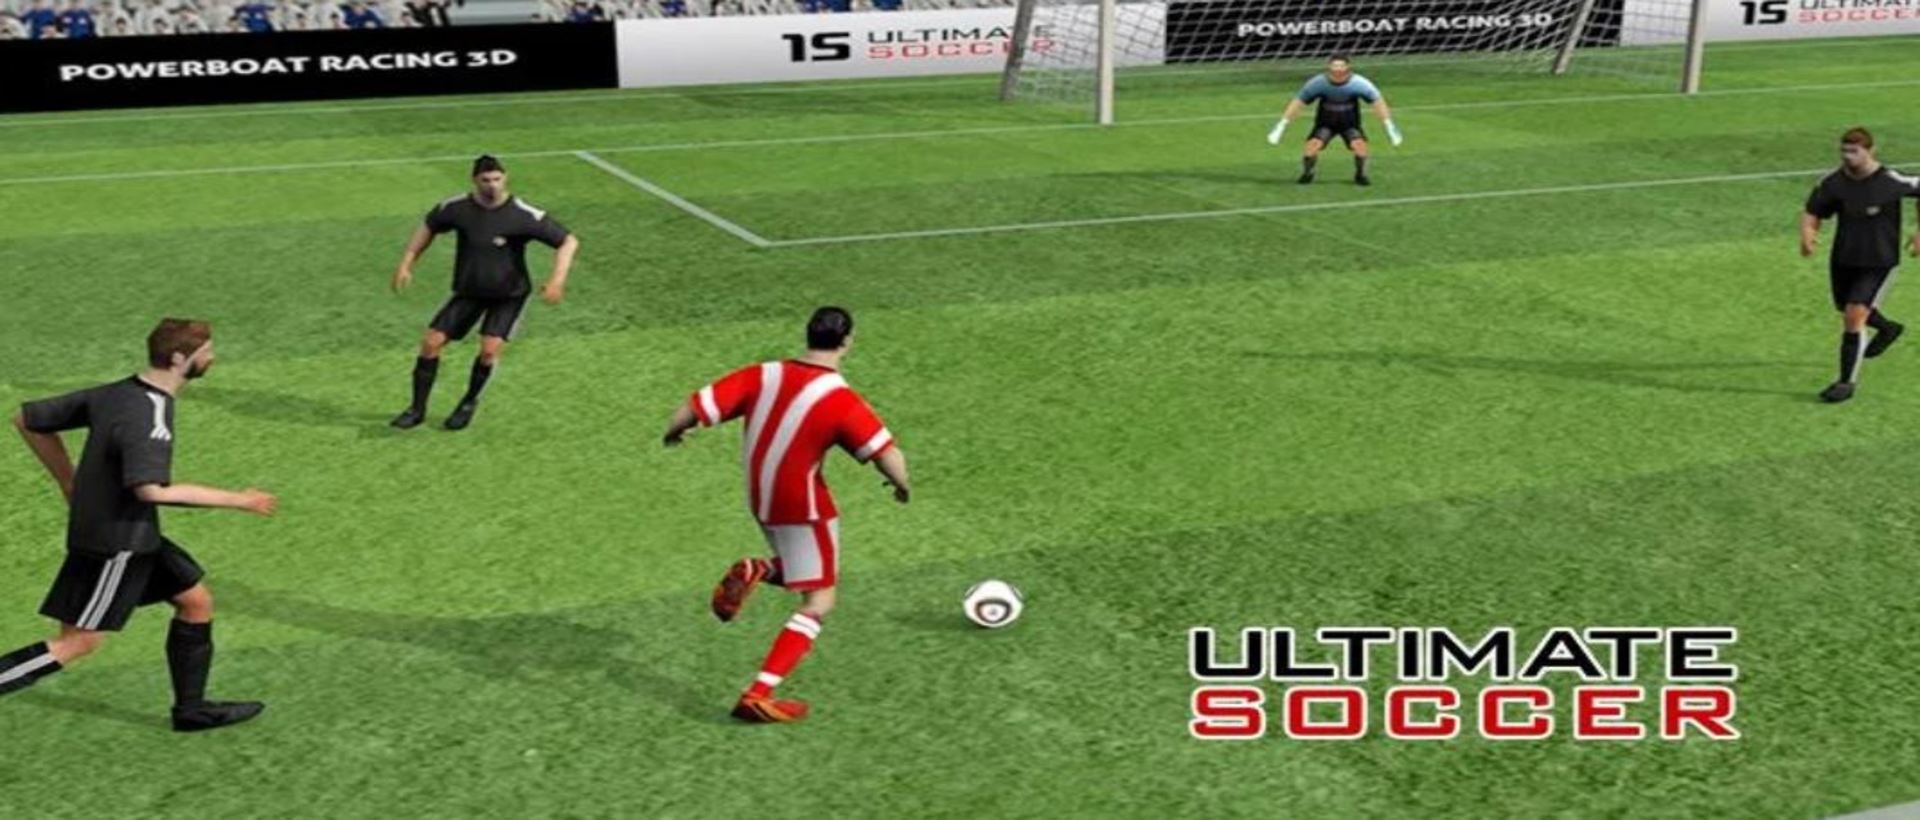 Chơi Ultimate Soccer - Football trên máy tính/PC cùng giả lập NoxPlayer